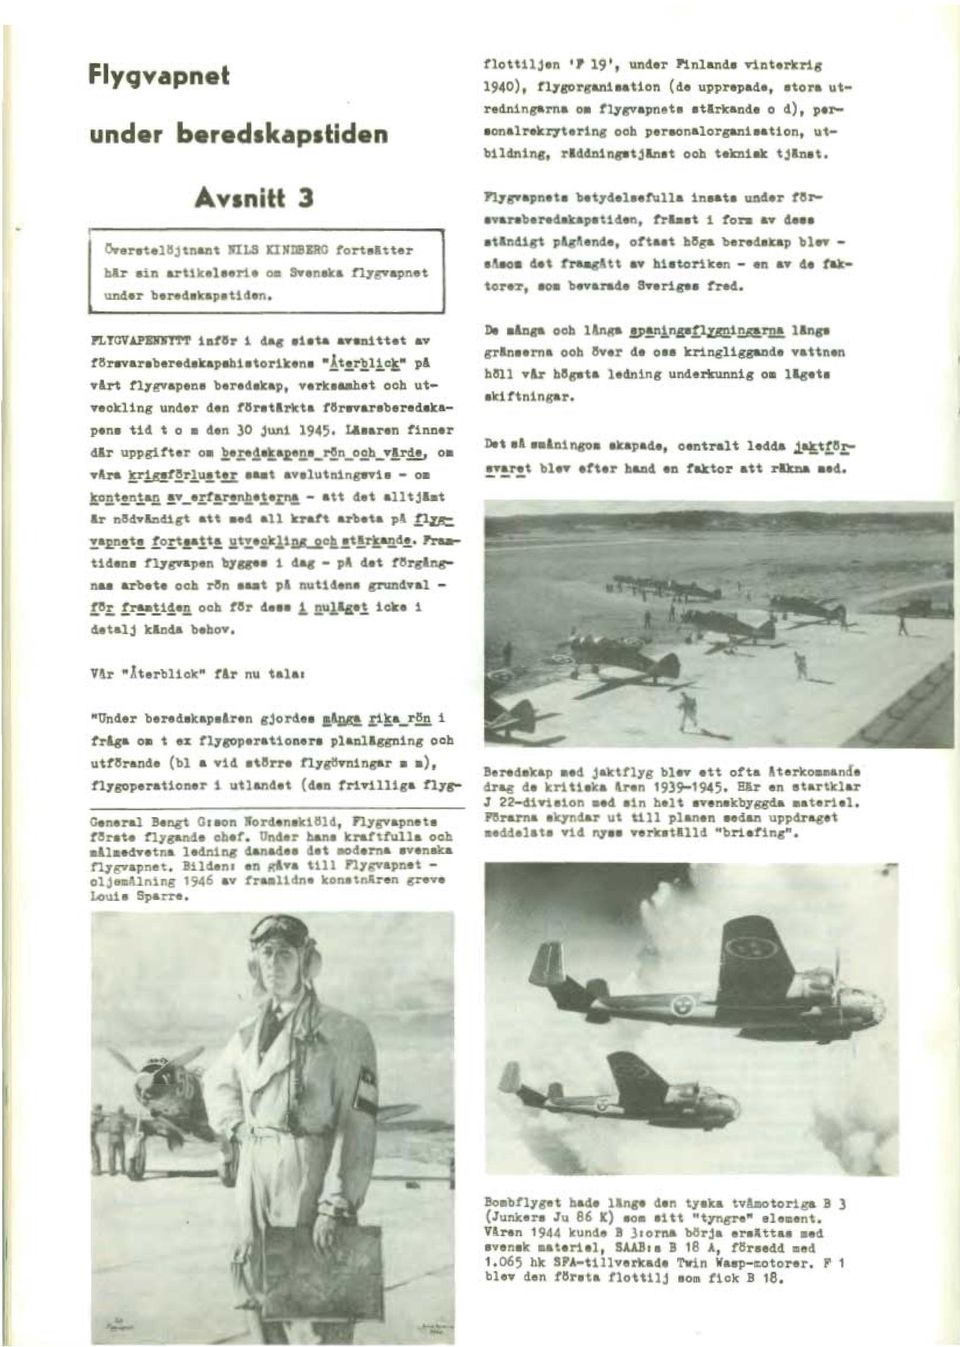 ." pä värt flygvapens beredskap, verksamhet och utveckling under den förstärkta försvarsberedskapens tid t o m den 30 juni 1945. Läsaren finner där uppgifter om :2_e.re!s!_aE_e!!,B_r~n_0,2.h_v.!!,r!